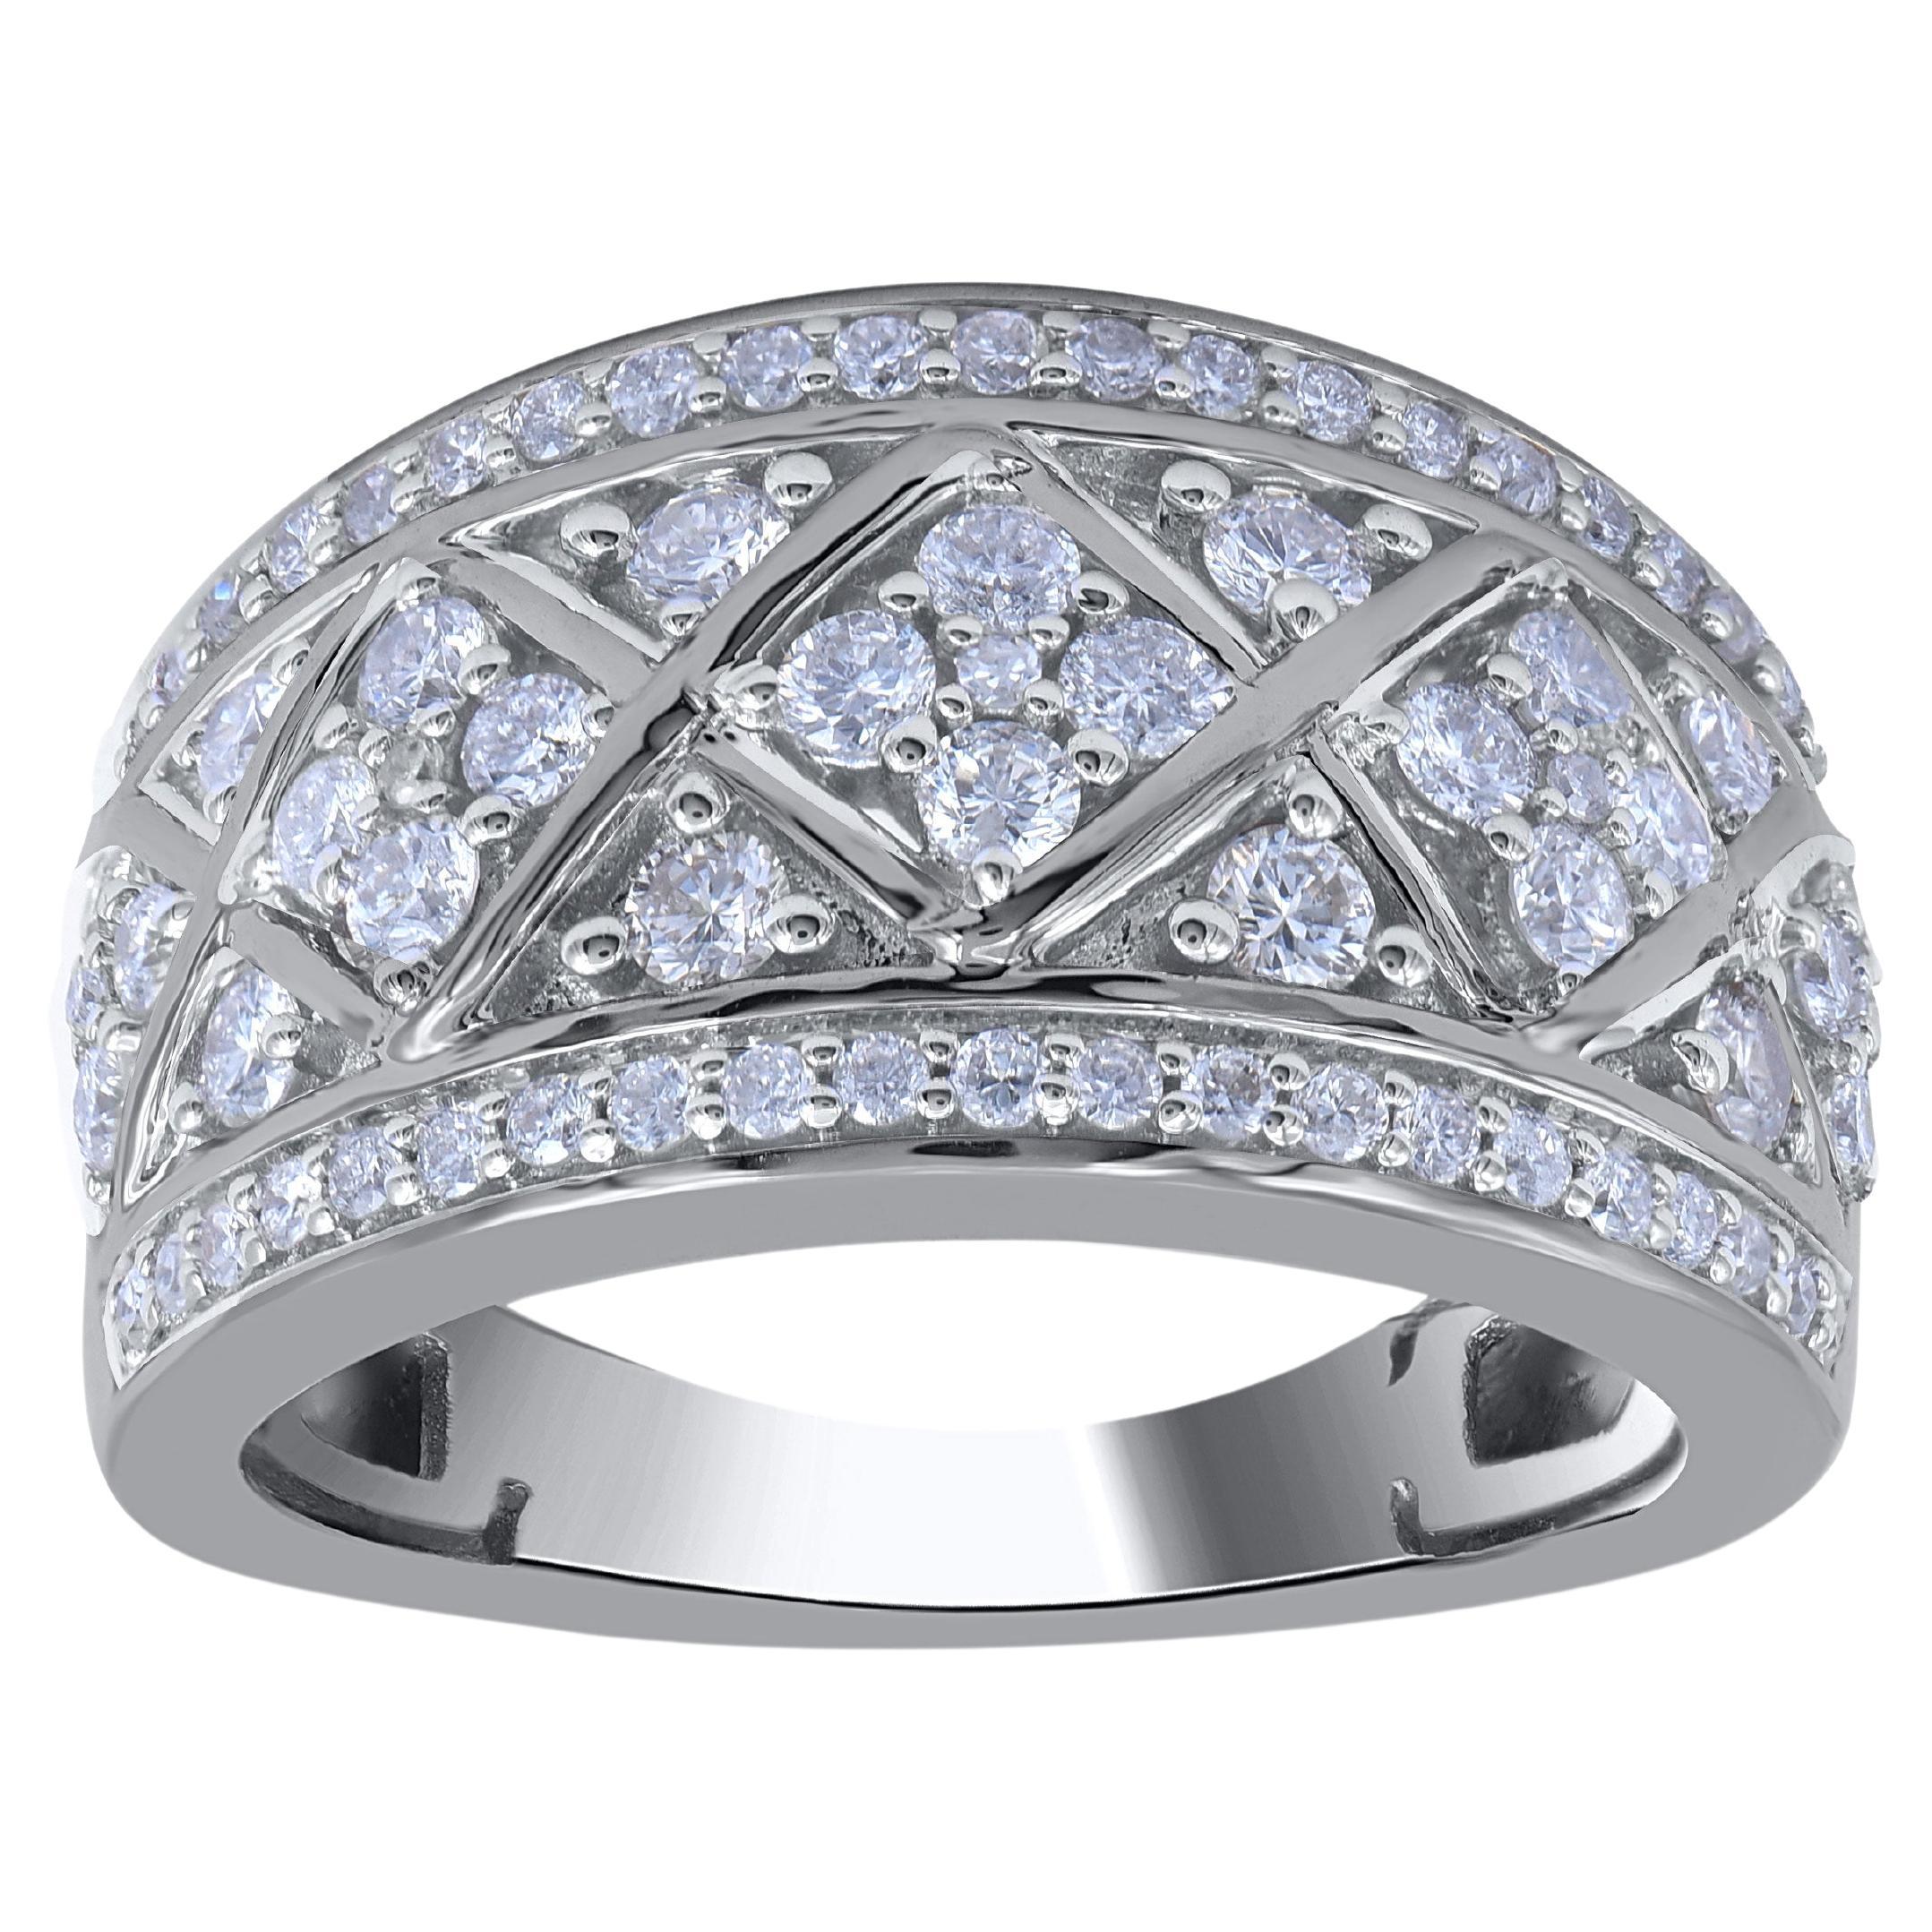 TJD 1.0 Carat Natural Round Diamond 14 Karat White Gold Wedding Band Ring For Sale